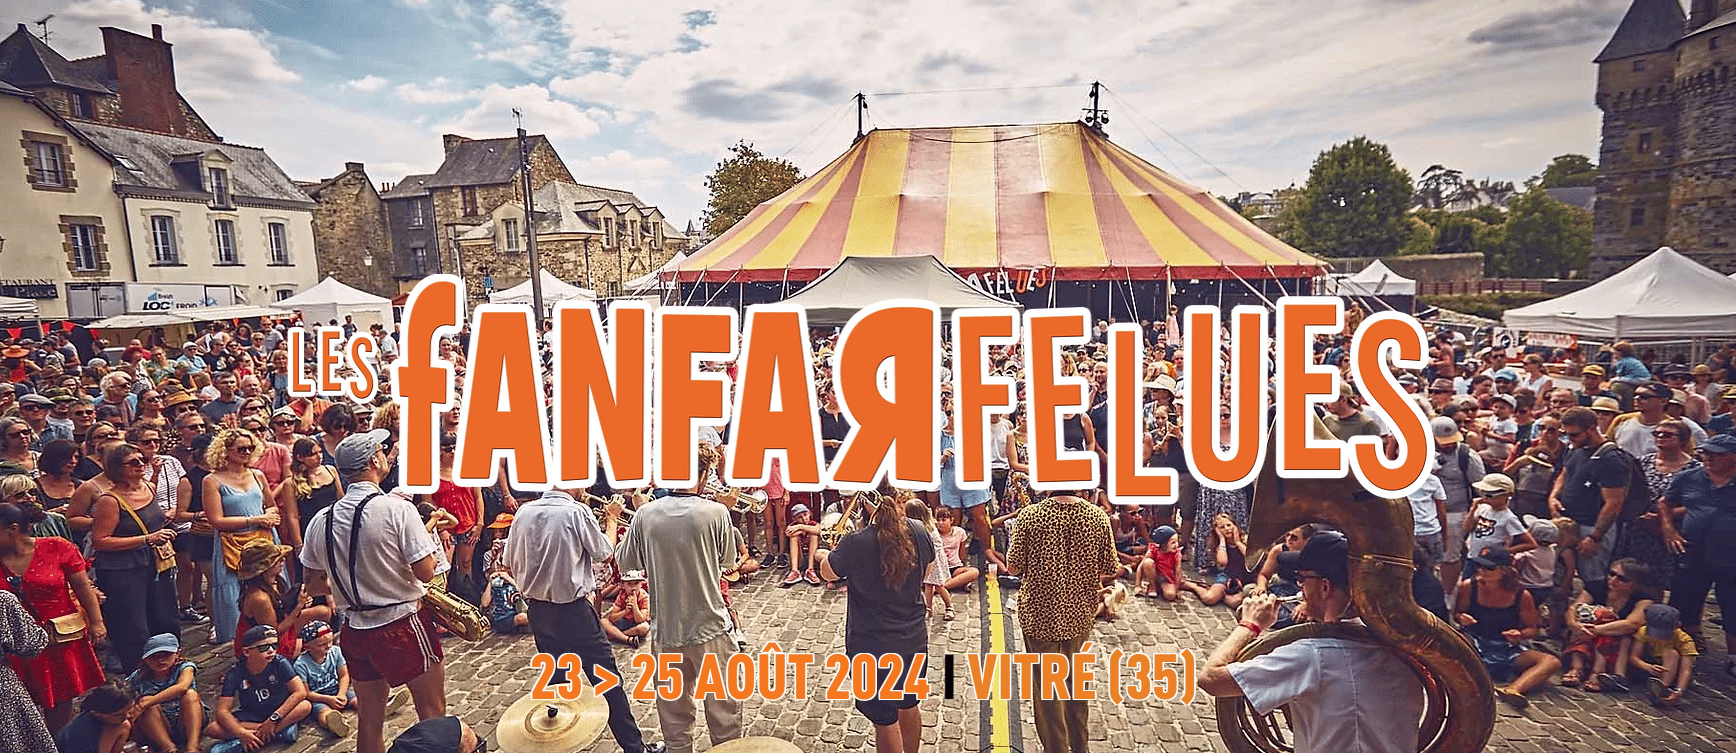 Festival Les Fanfarfelues, du 23 au 25 août à Vitré (35)